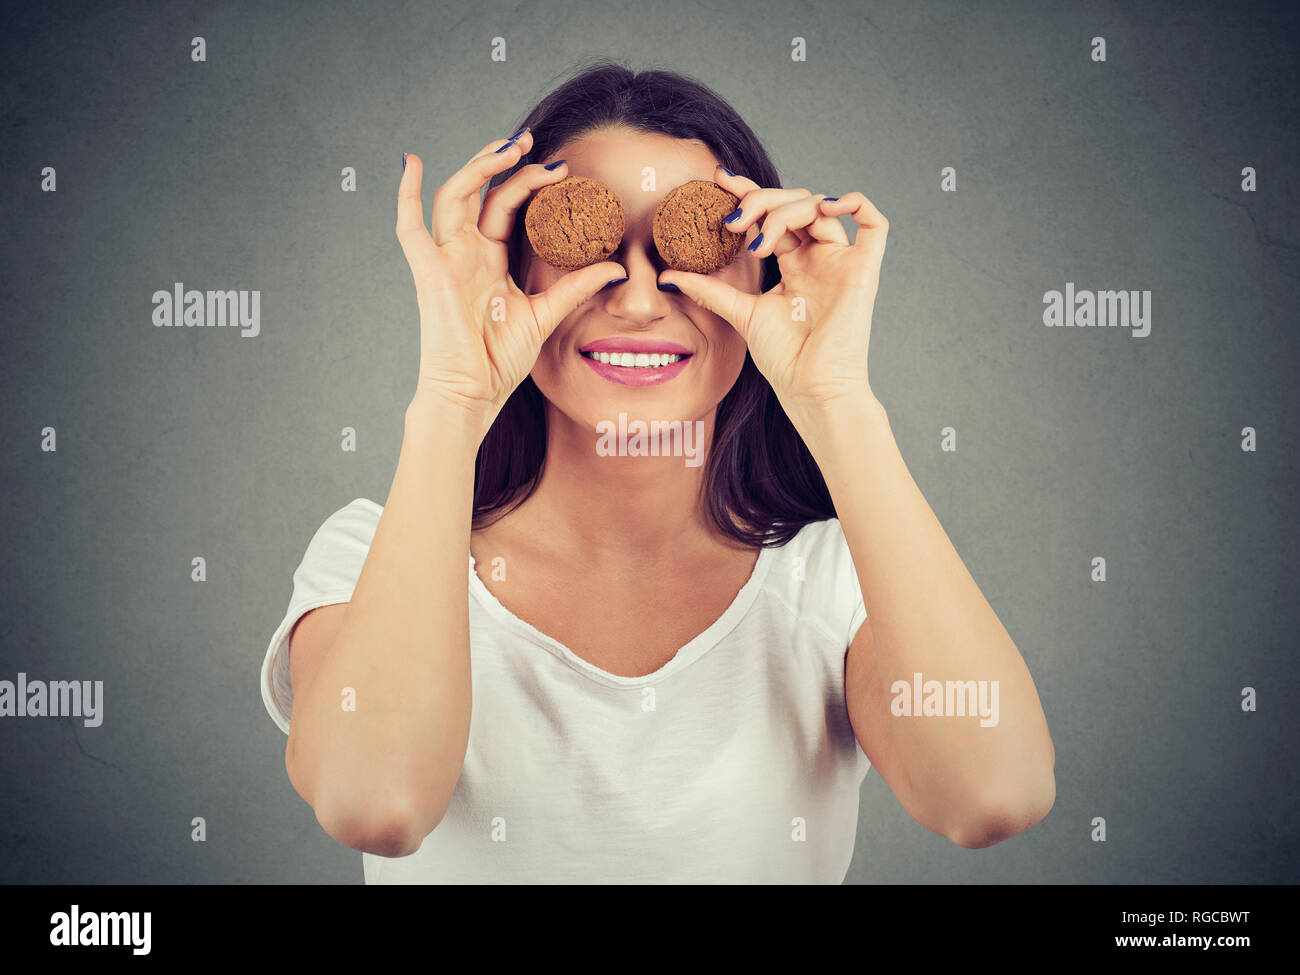 Nette junge Frau mit Cookies der vor ihren Augen und glücklich lächelnd Stockfoto